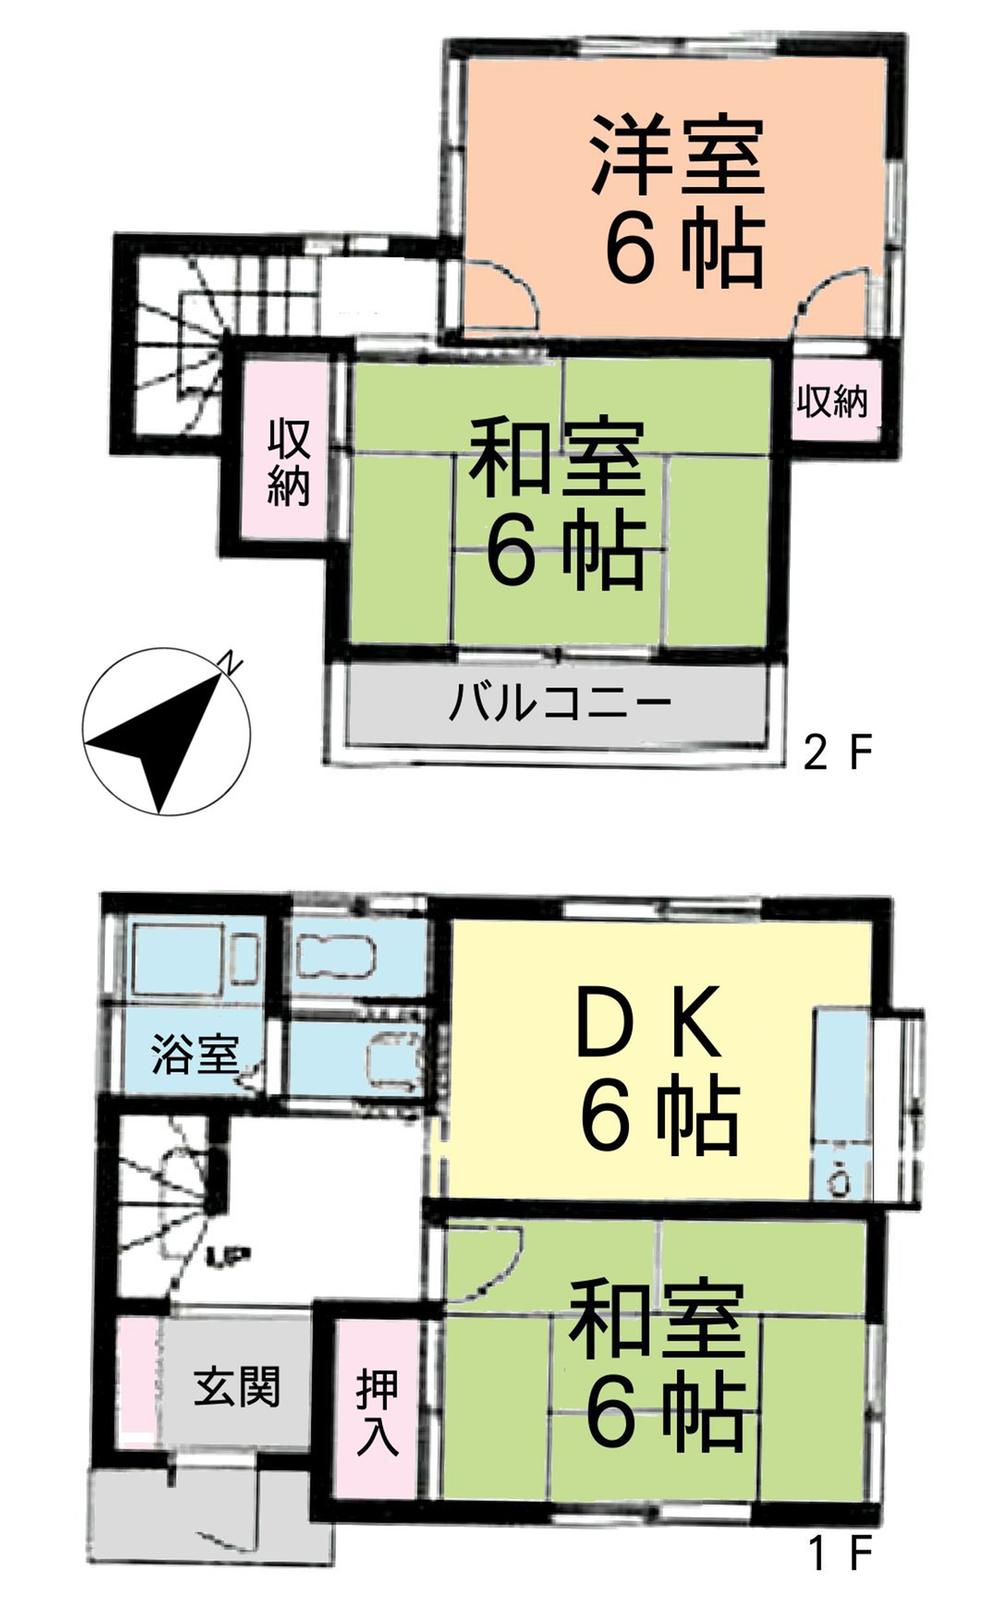 Floor plan. 16.8 million yen, 3DK, Land area 64.43 sq m , Building area 59.61 sq m